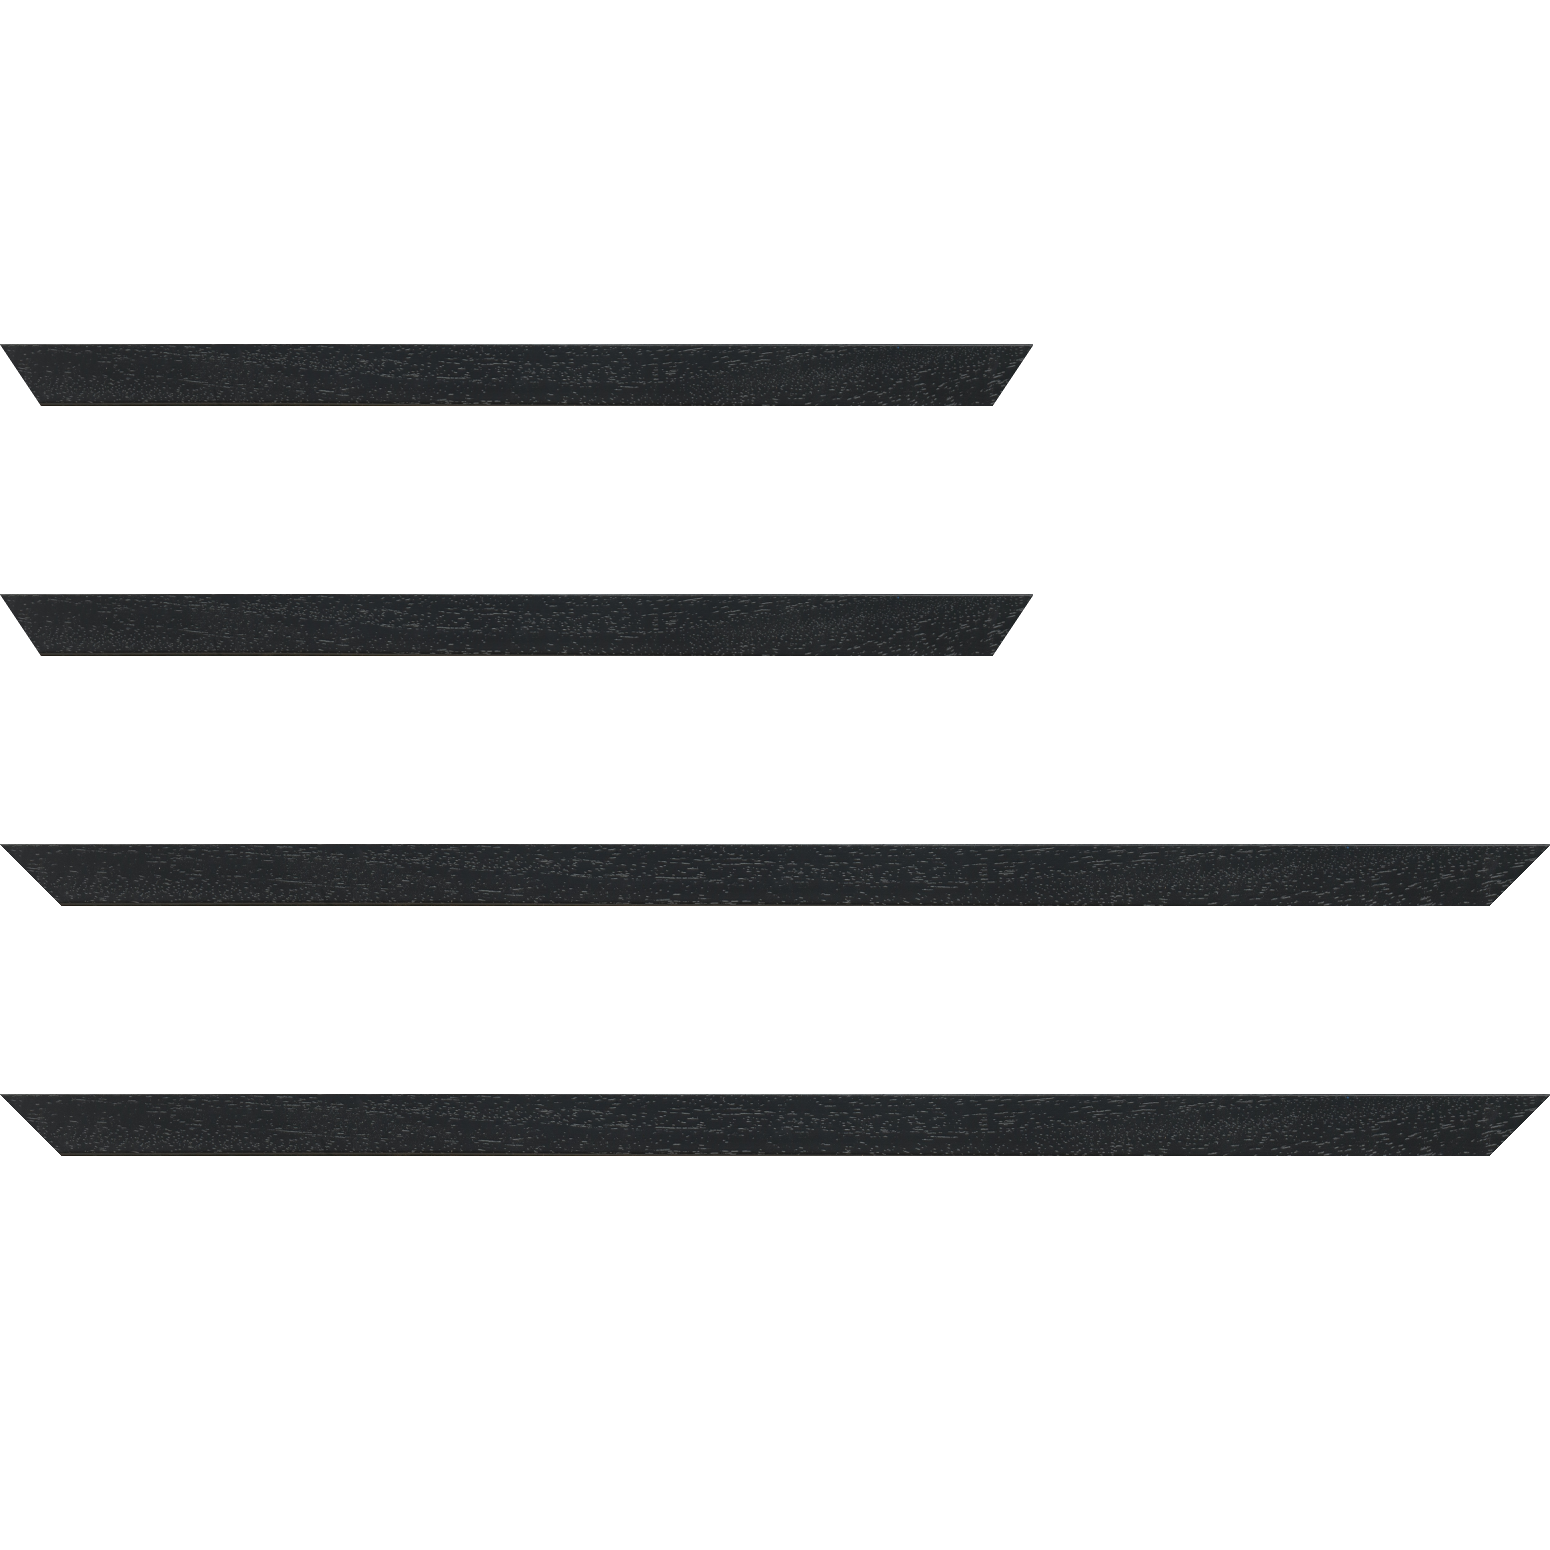 Baguette bois profil plat largeur 2cm hauteur 3.3cm couleur noir satiné (aussi appelé cache clou)